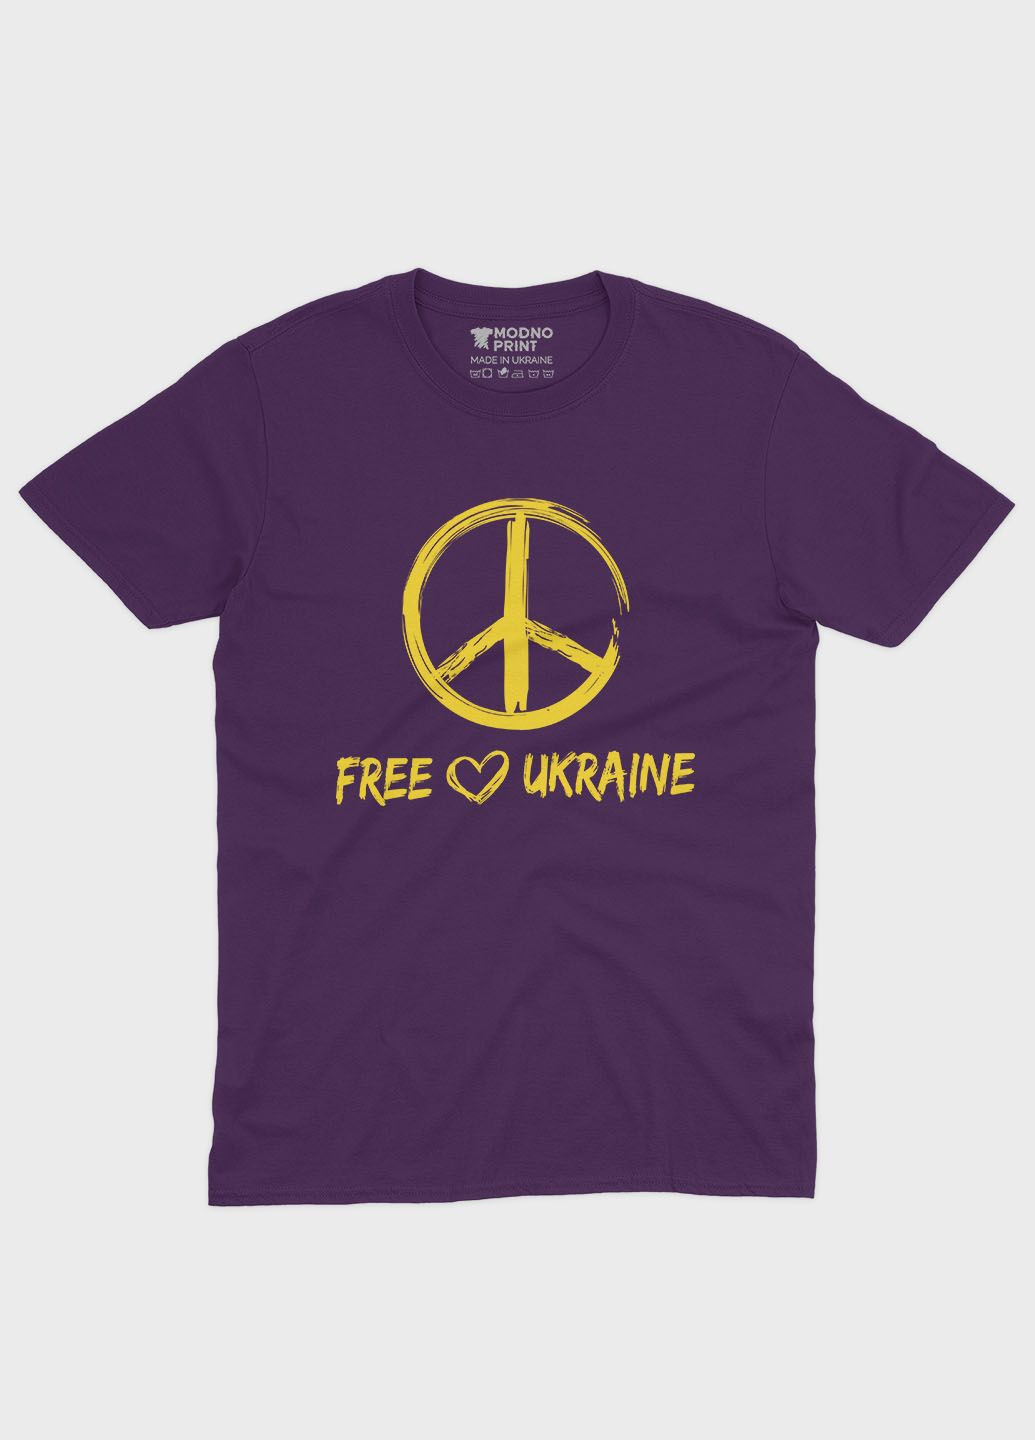 Фіолетова демісезонна футболка для хлопчика з патріотичним принтом free ukraine (ts001-2-dby-005-1-034) Modno